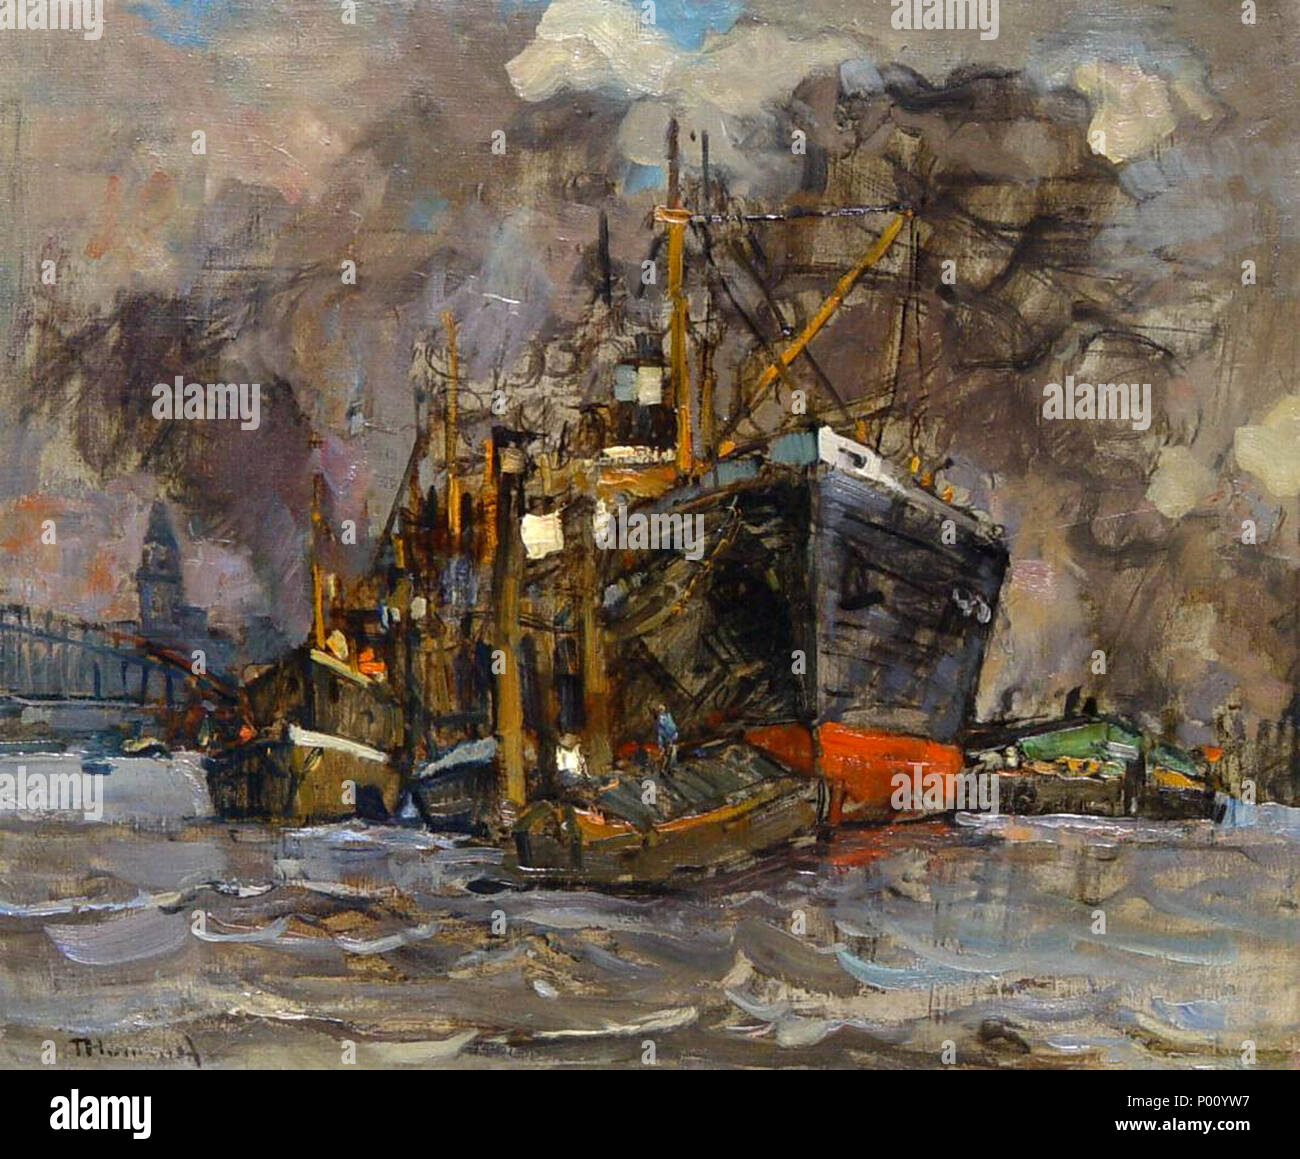 Deutsch: Motiv aus dem Hamburger Hafen; Öl auf Leinwand; 57 × 67 cm (22.4 ×  26.3 in) . by 1939. Theodor Hummel 99 Theodor Hummel Hamburger Hafen Stock  Photo - Alamy